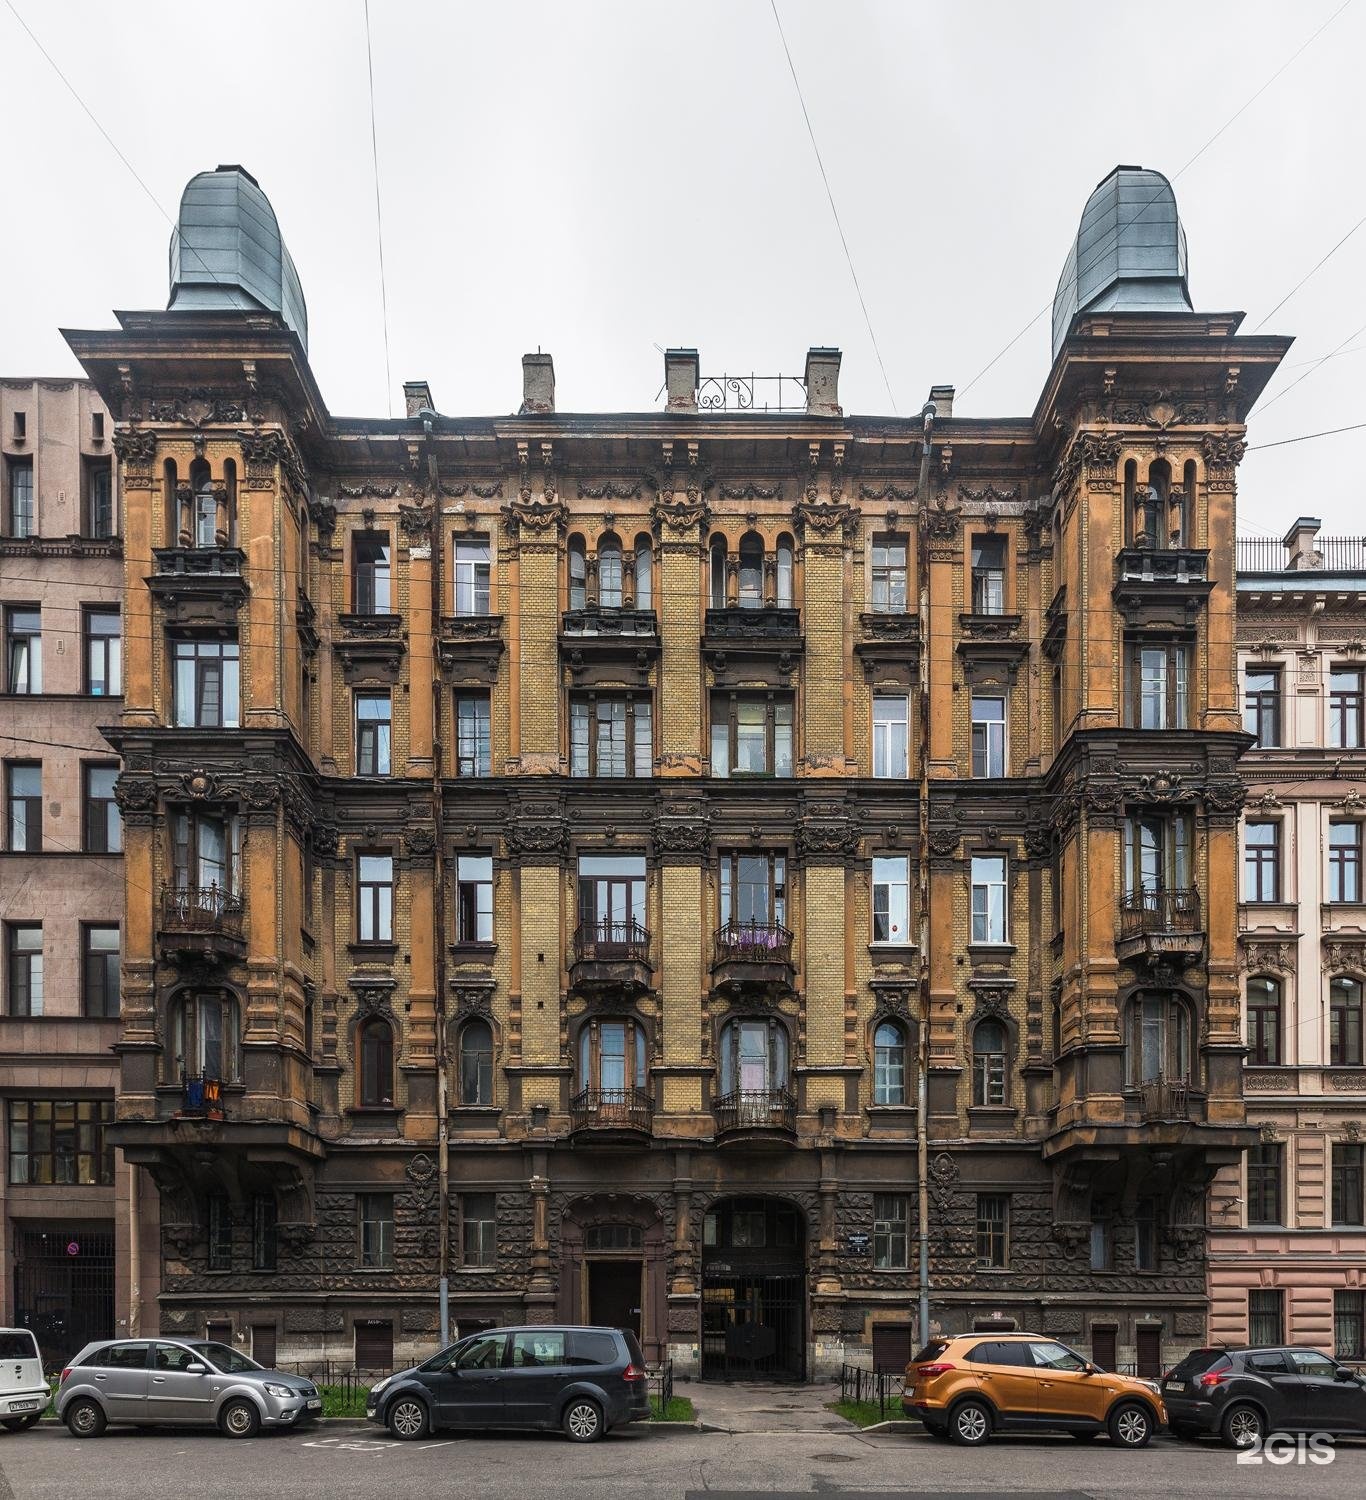 Доходный дом купца Егорова в Санкт-Петербурге